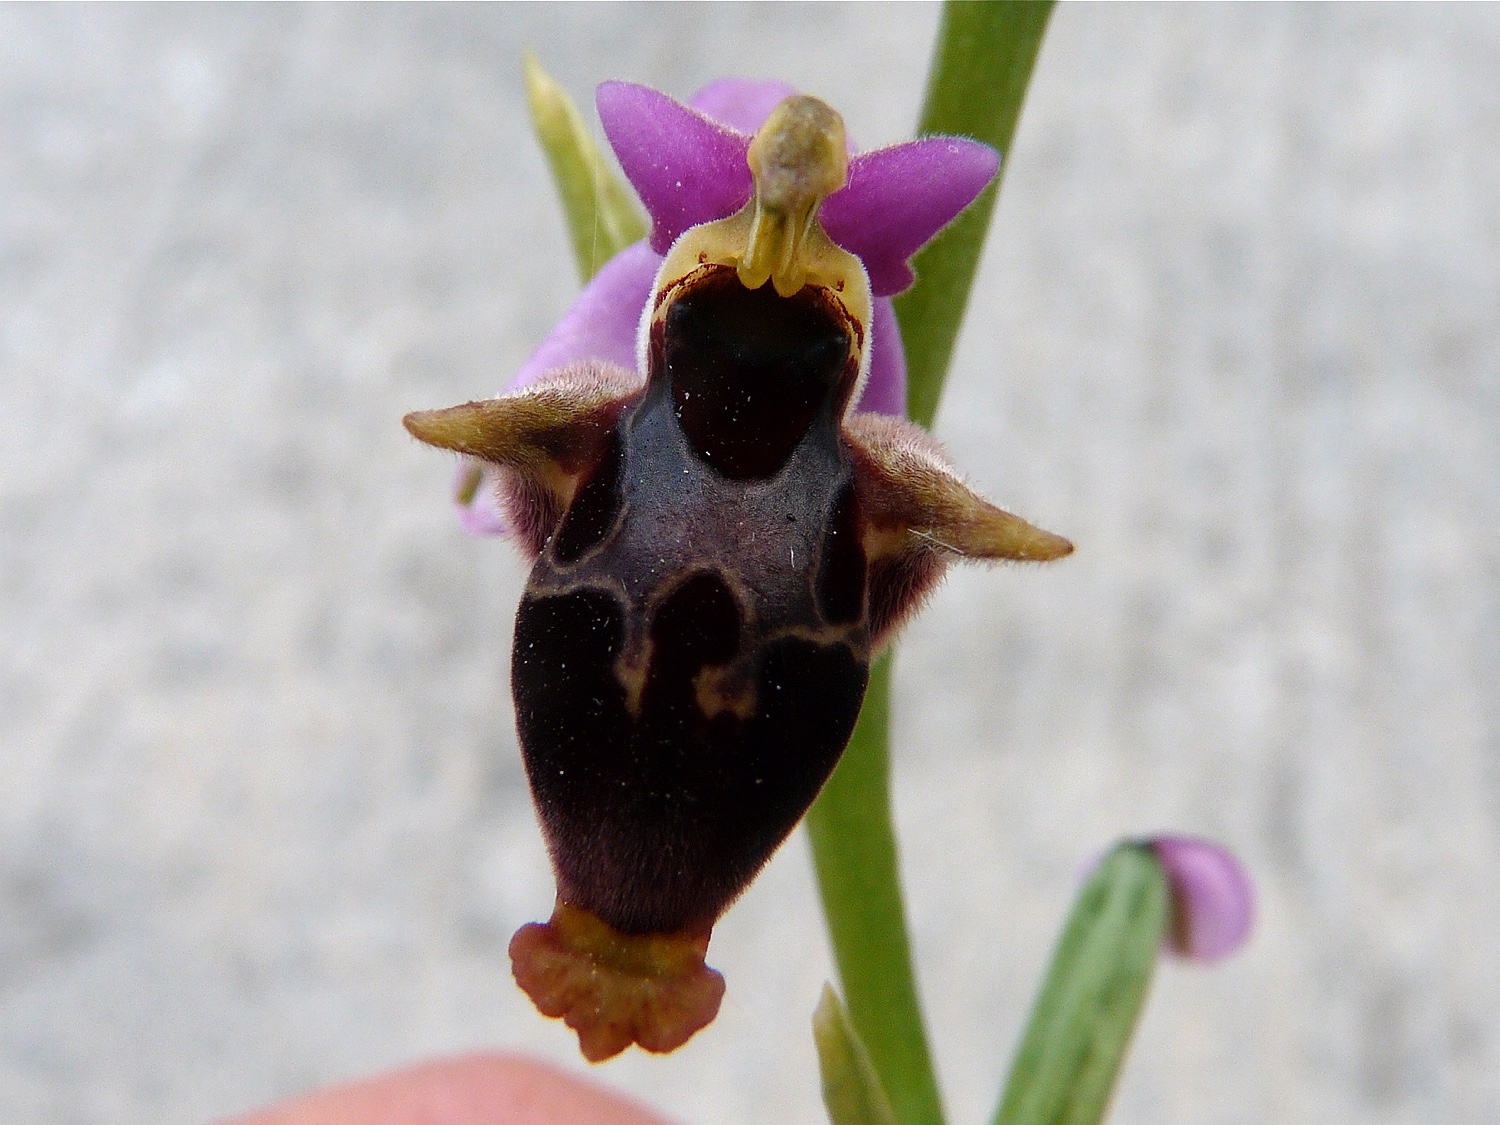 Heldreichs Ragwurz, Ophrys scolopax ssp. heldreichii